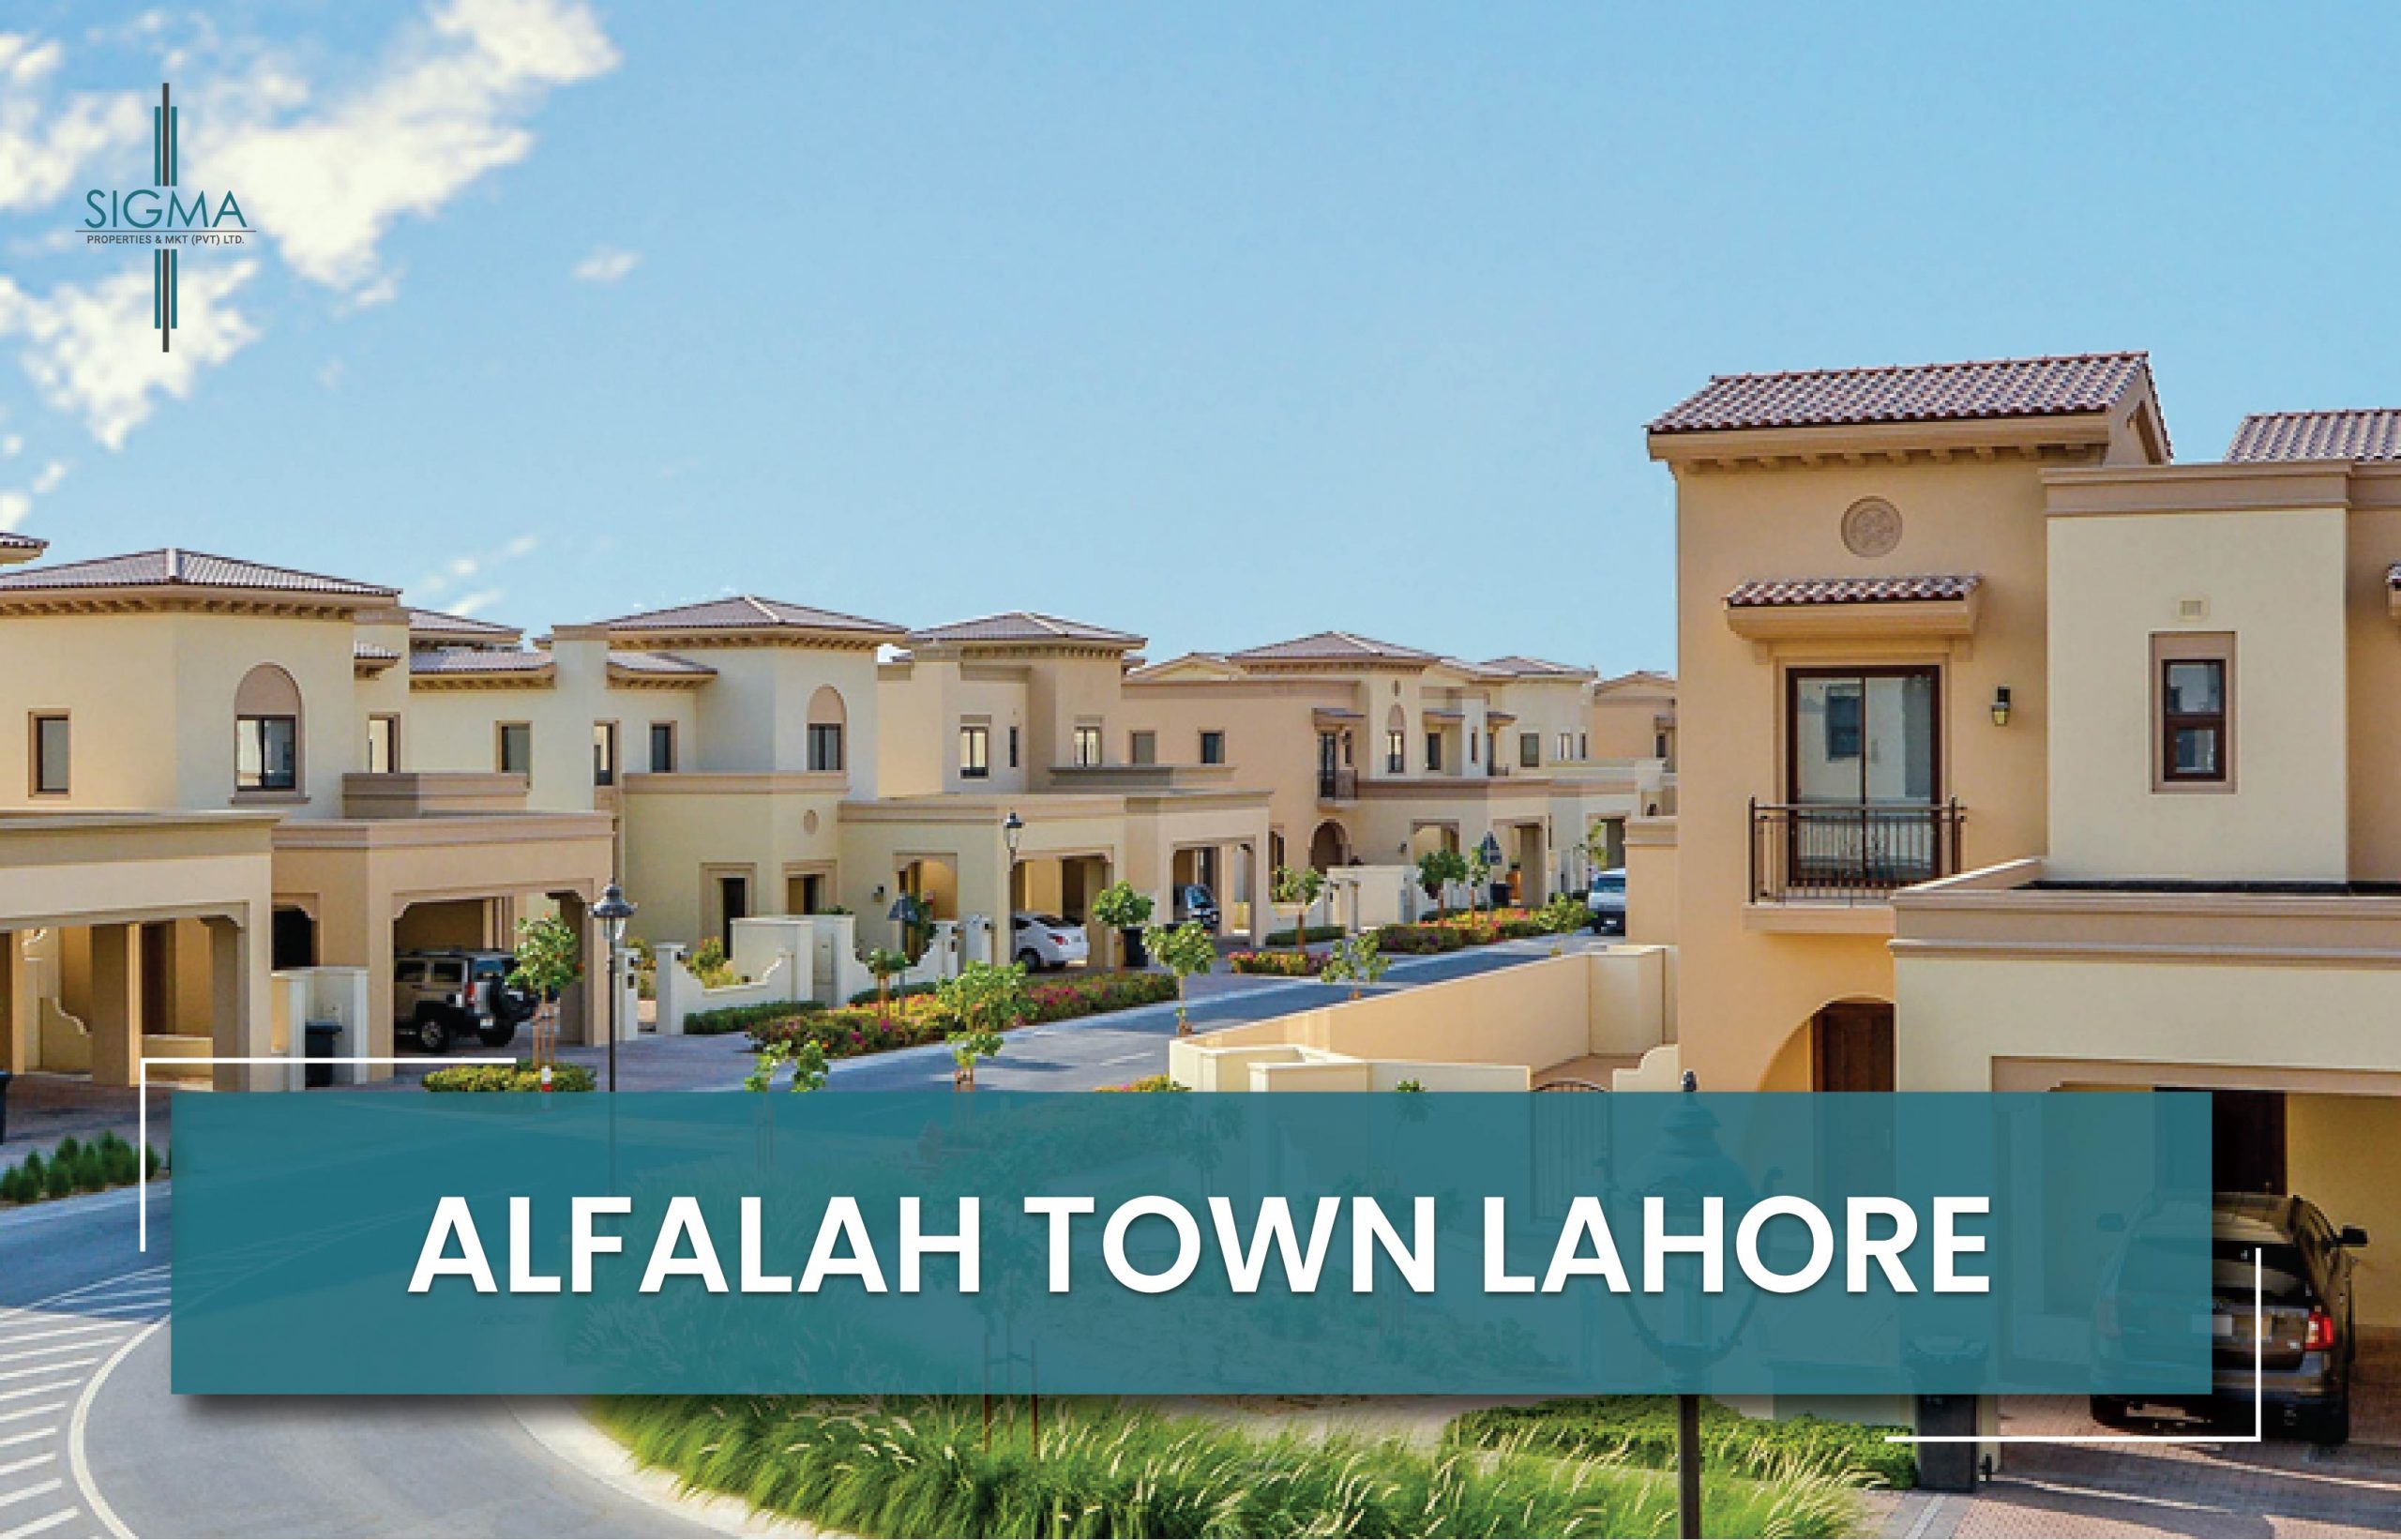 Alfalah Town Lahore